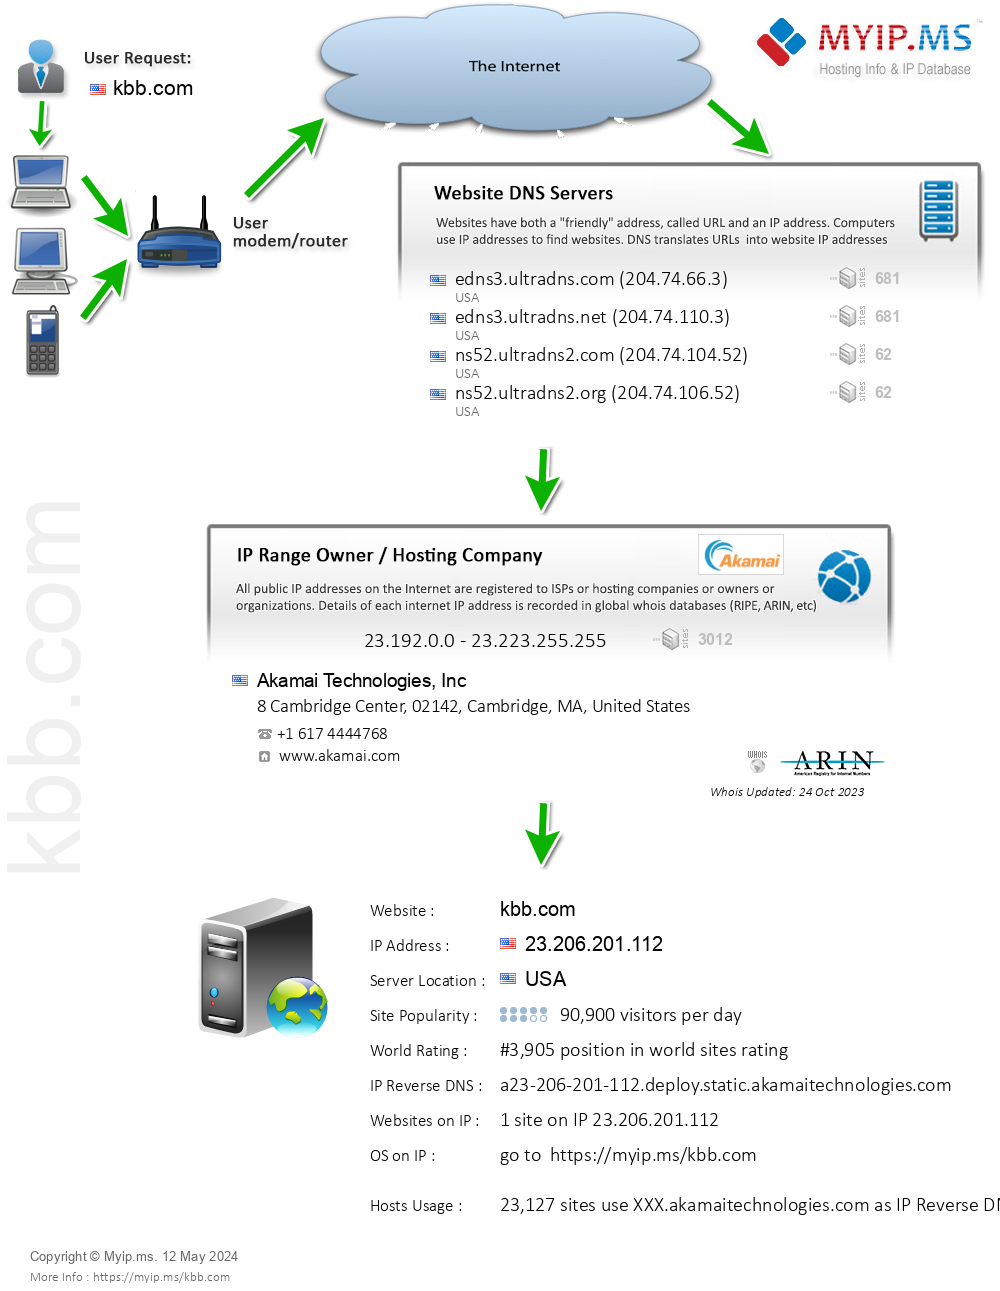 Kbb.com - Website Hosting Visual IP Diagram